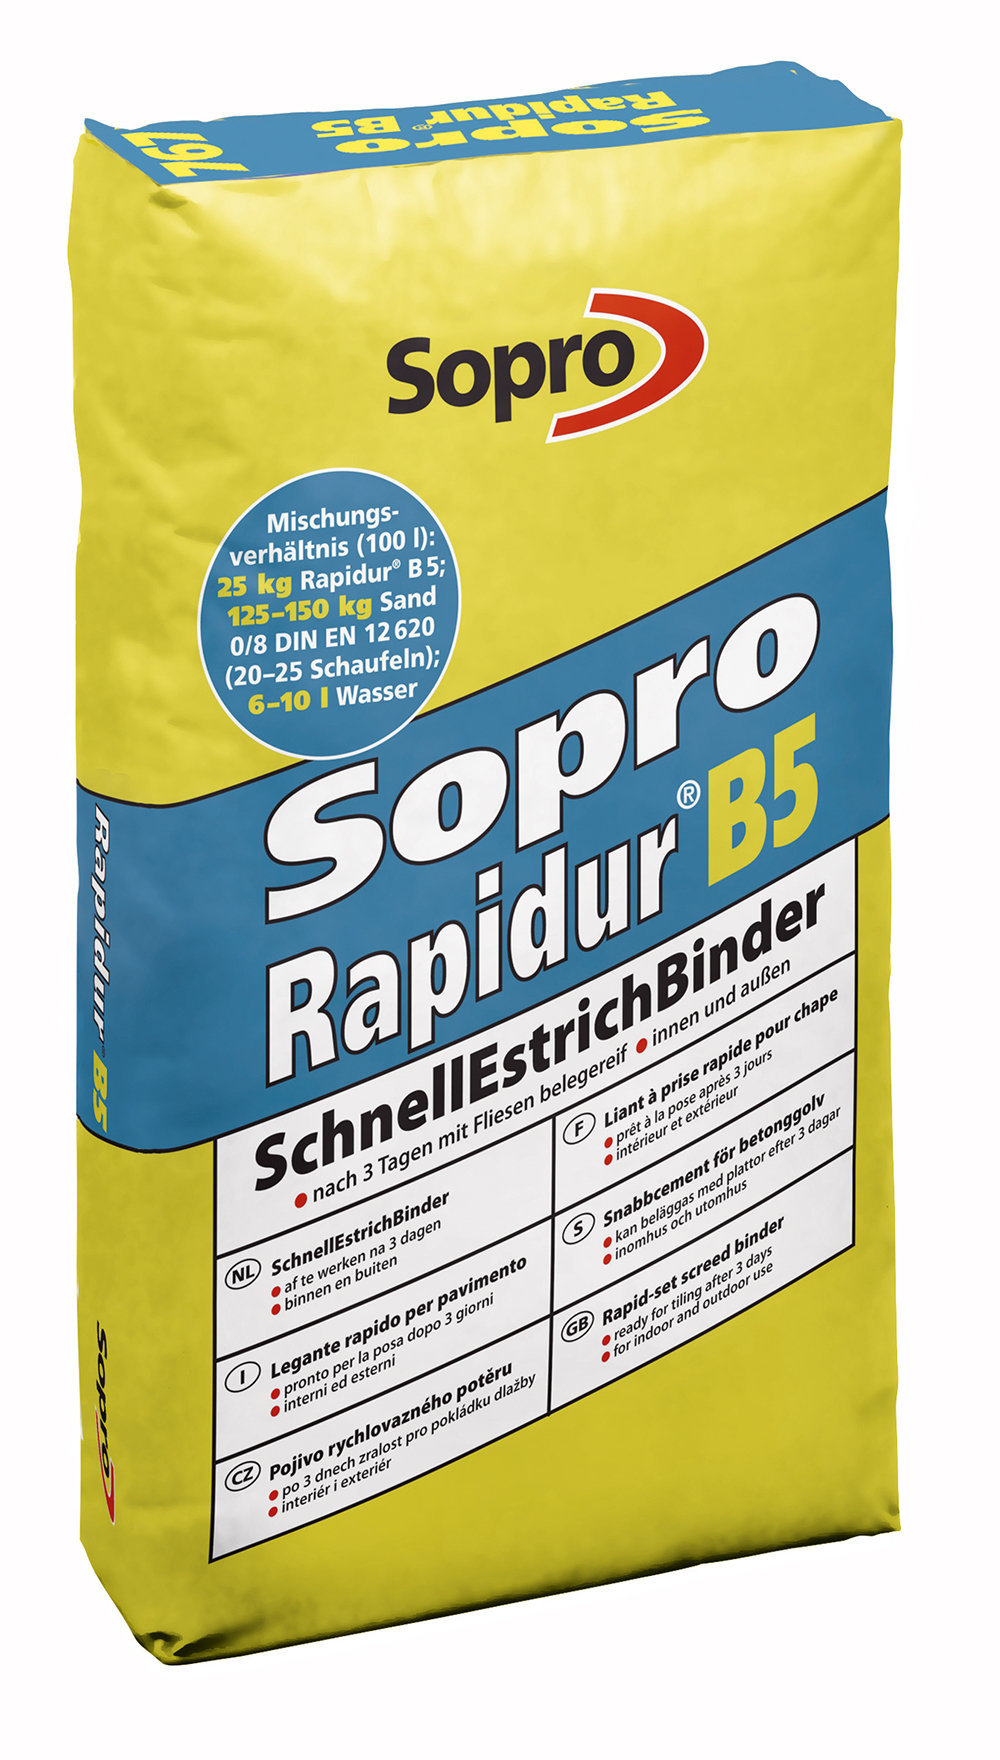 Sopro Rapidur B5 SchnellEstrichBinder SEB 767